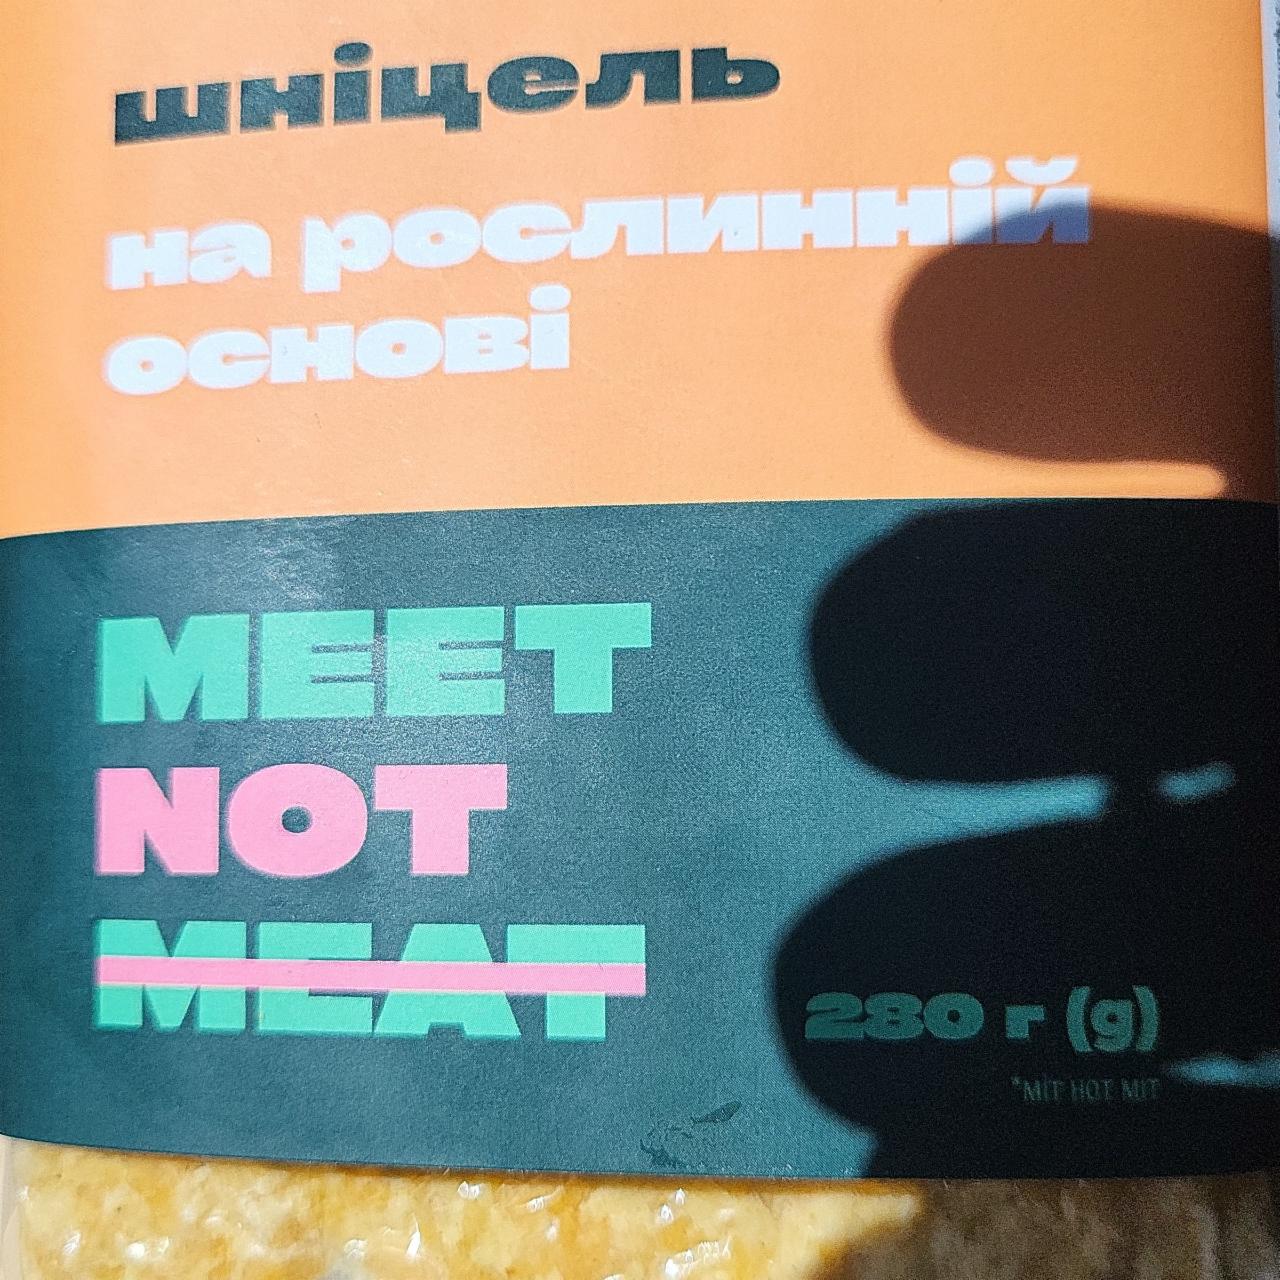 Фото - Шніцель на рослинній основі Meet Not Meat